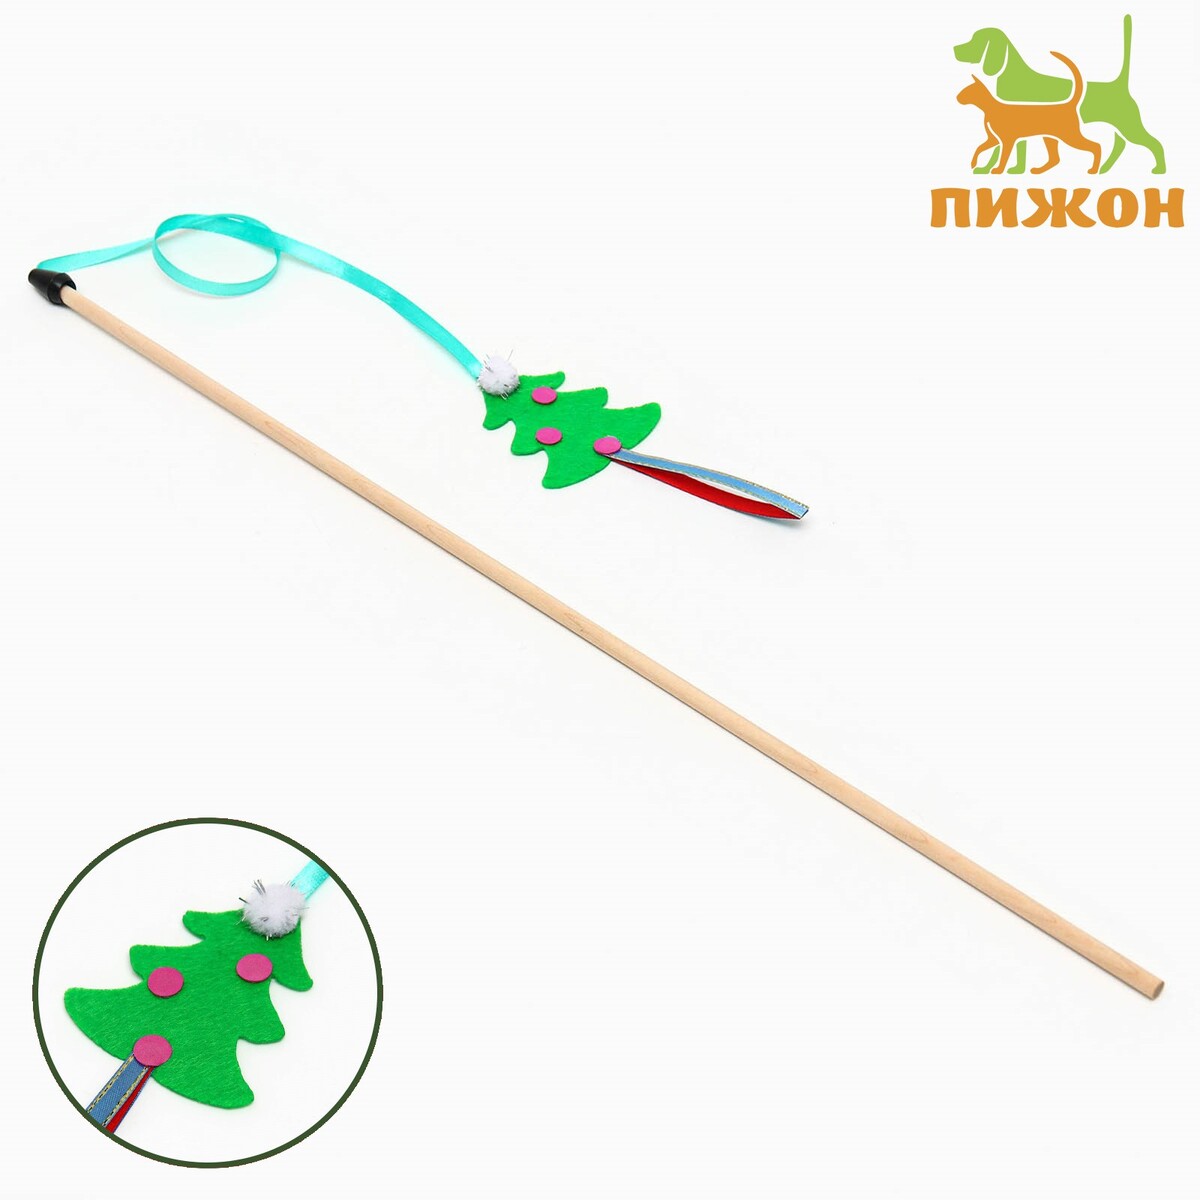 Дразнилка-удочка на деревянной палочке для кошек, зеленый, игрушка дразнилка для кошек